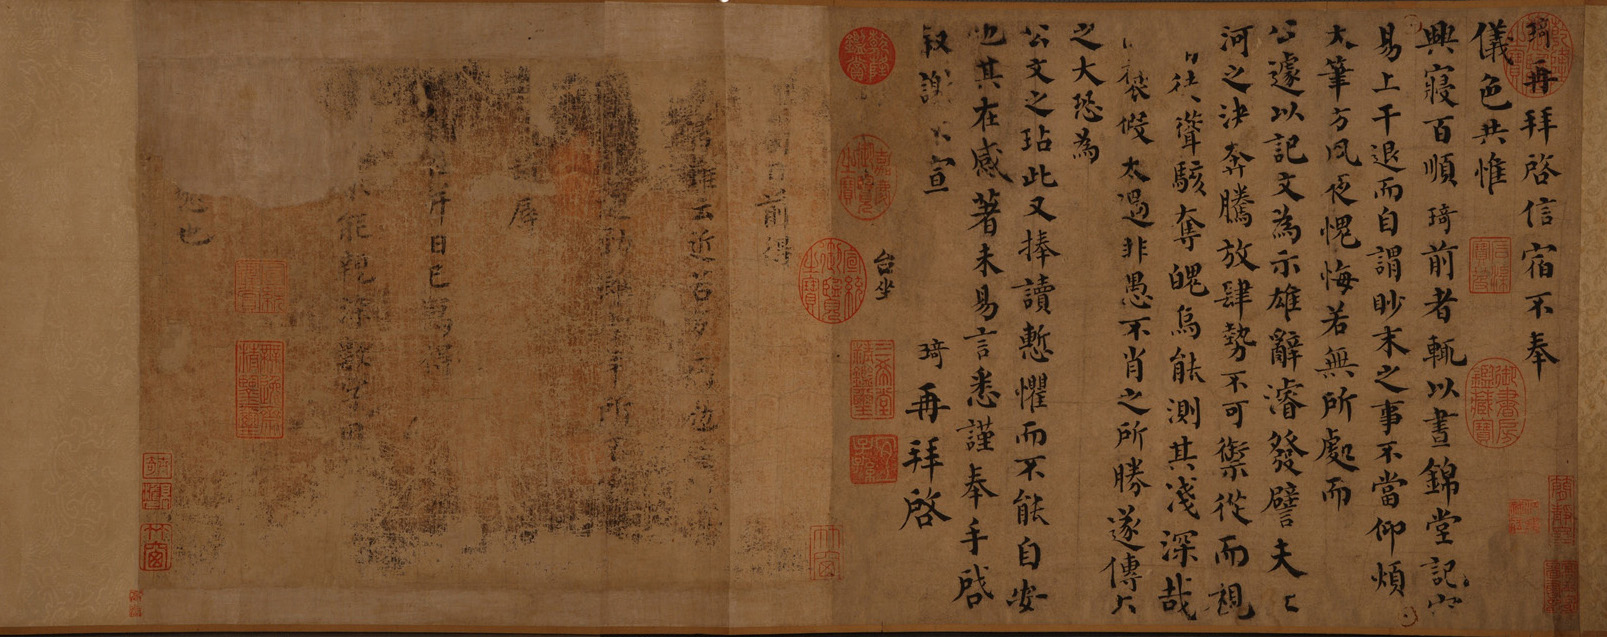 《北宋韩琦楷书信札》卷，右侧为《信宿帖》，左侧《旬日帖》字迹大多不可辨识。